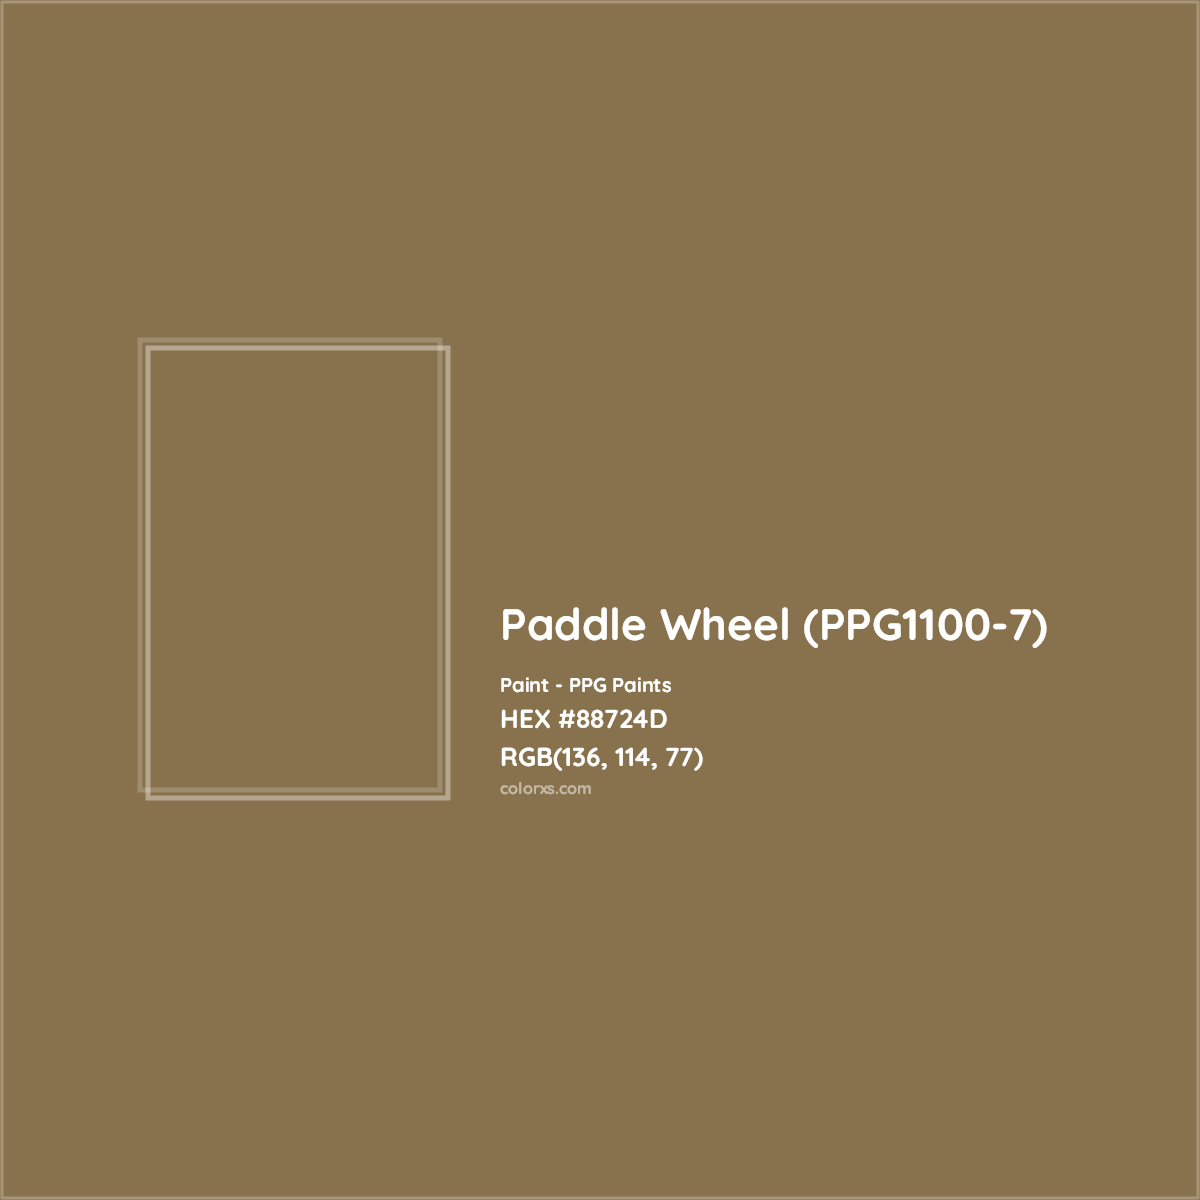 HEX #88724D Paddle Wheel (PPG1100-7) Paint PPG Paints - Color Code